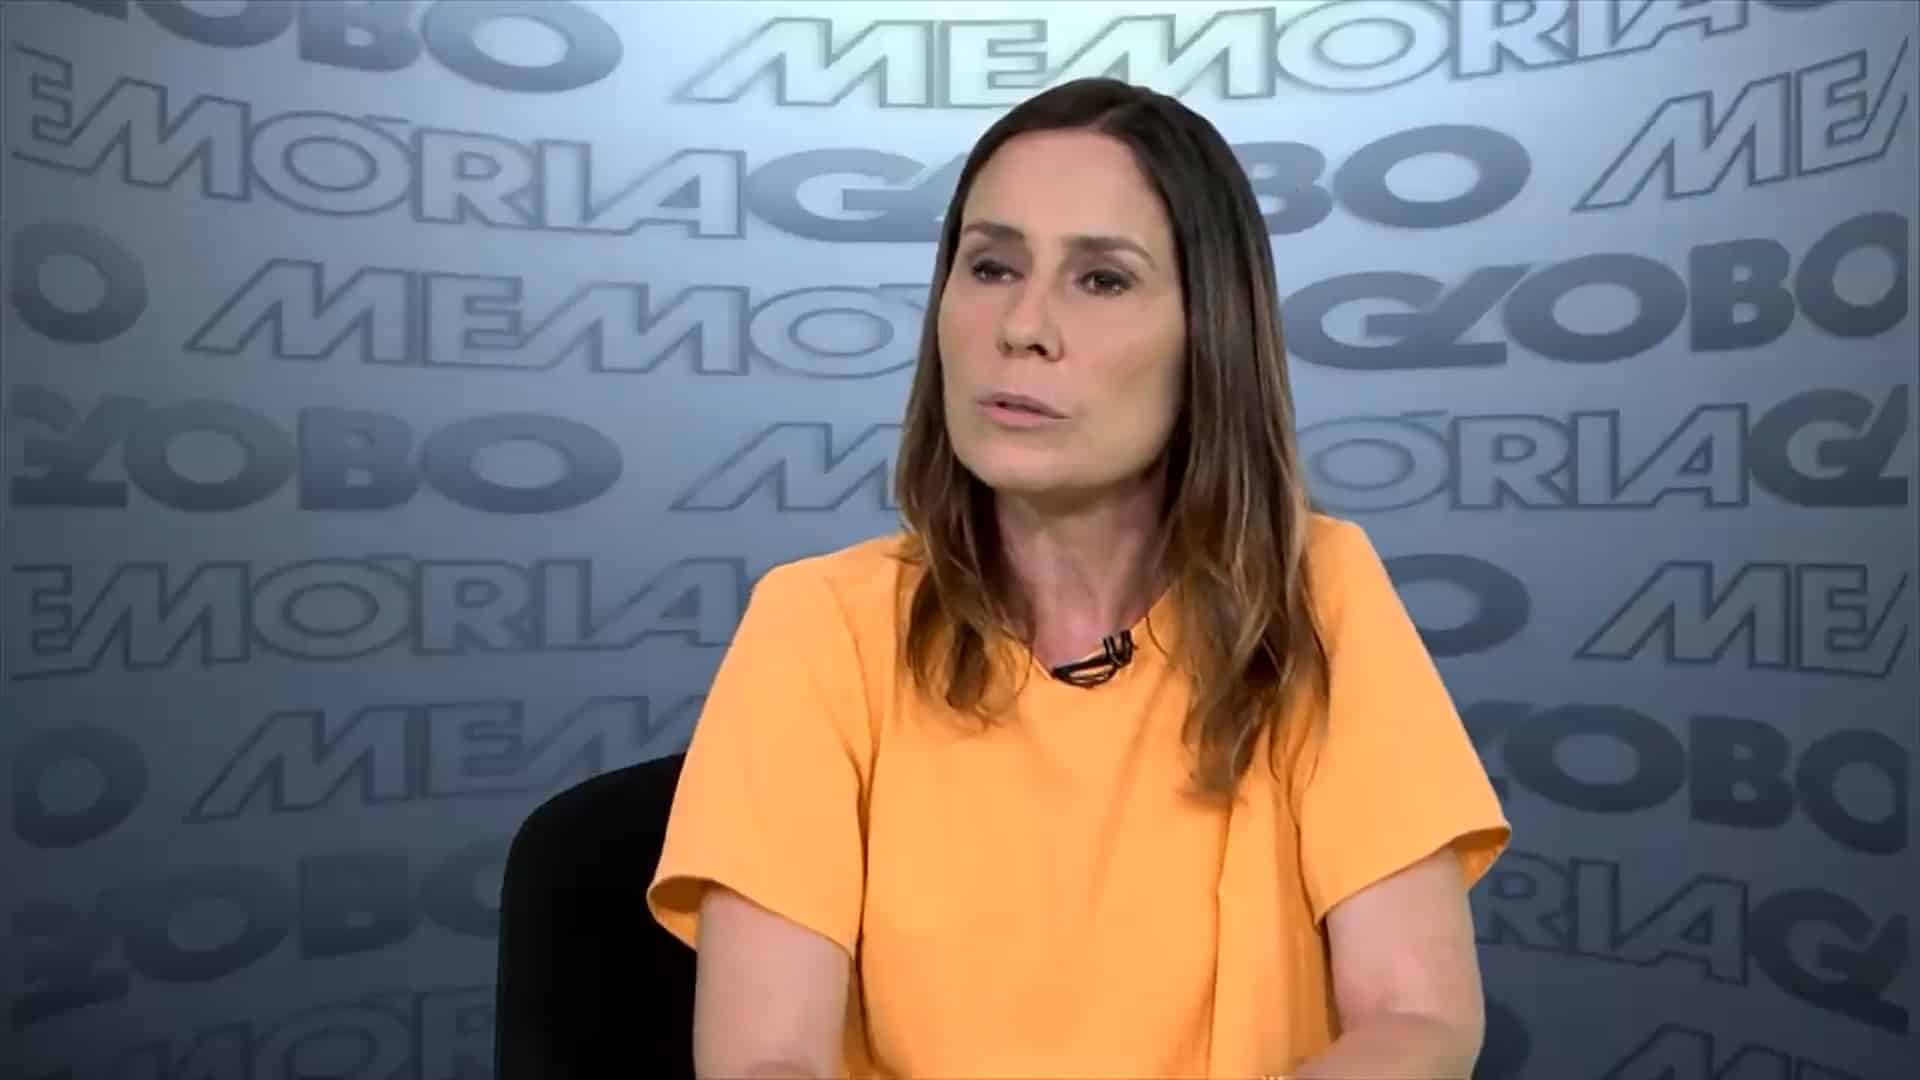 Susana Naspolini, repórter da Globo, morre após batalha contra um câncer